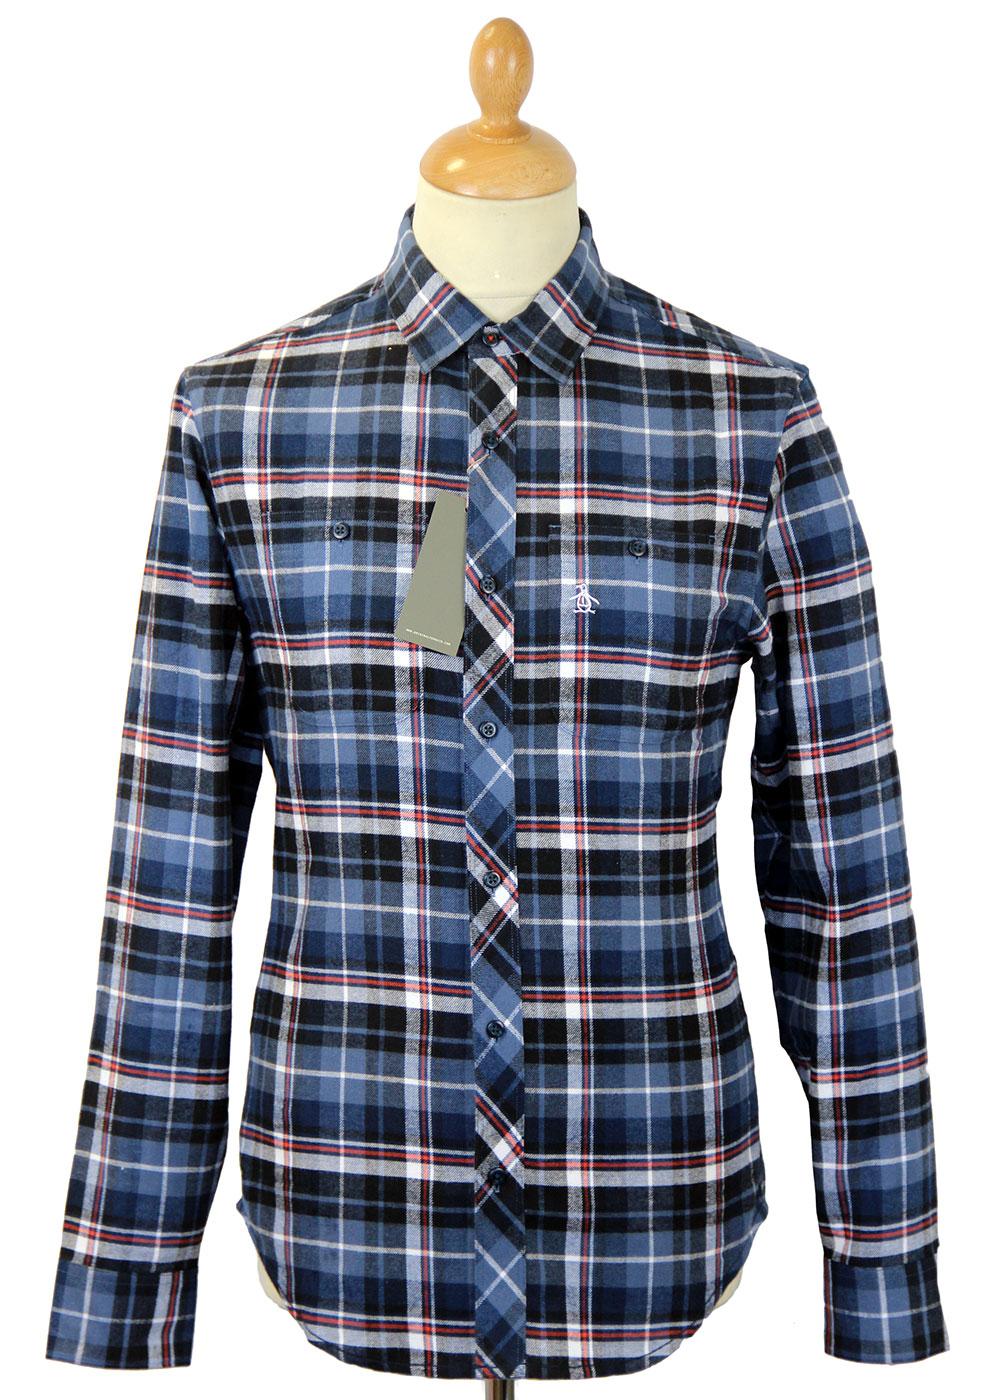 ORIGINAL PENGUIN Retro Mod Flannel Check Shirt